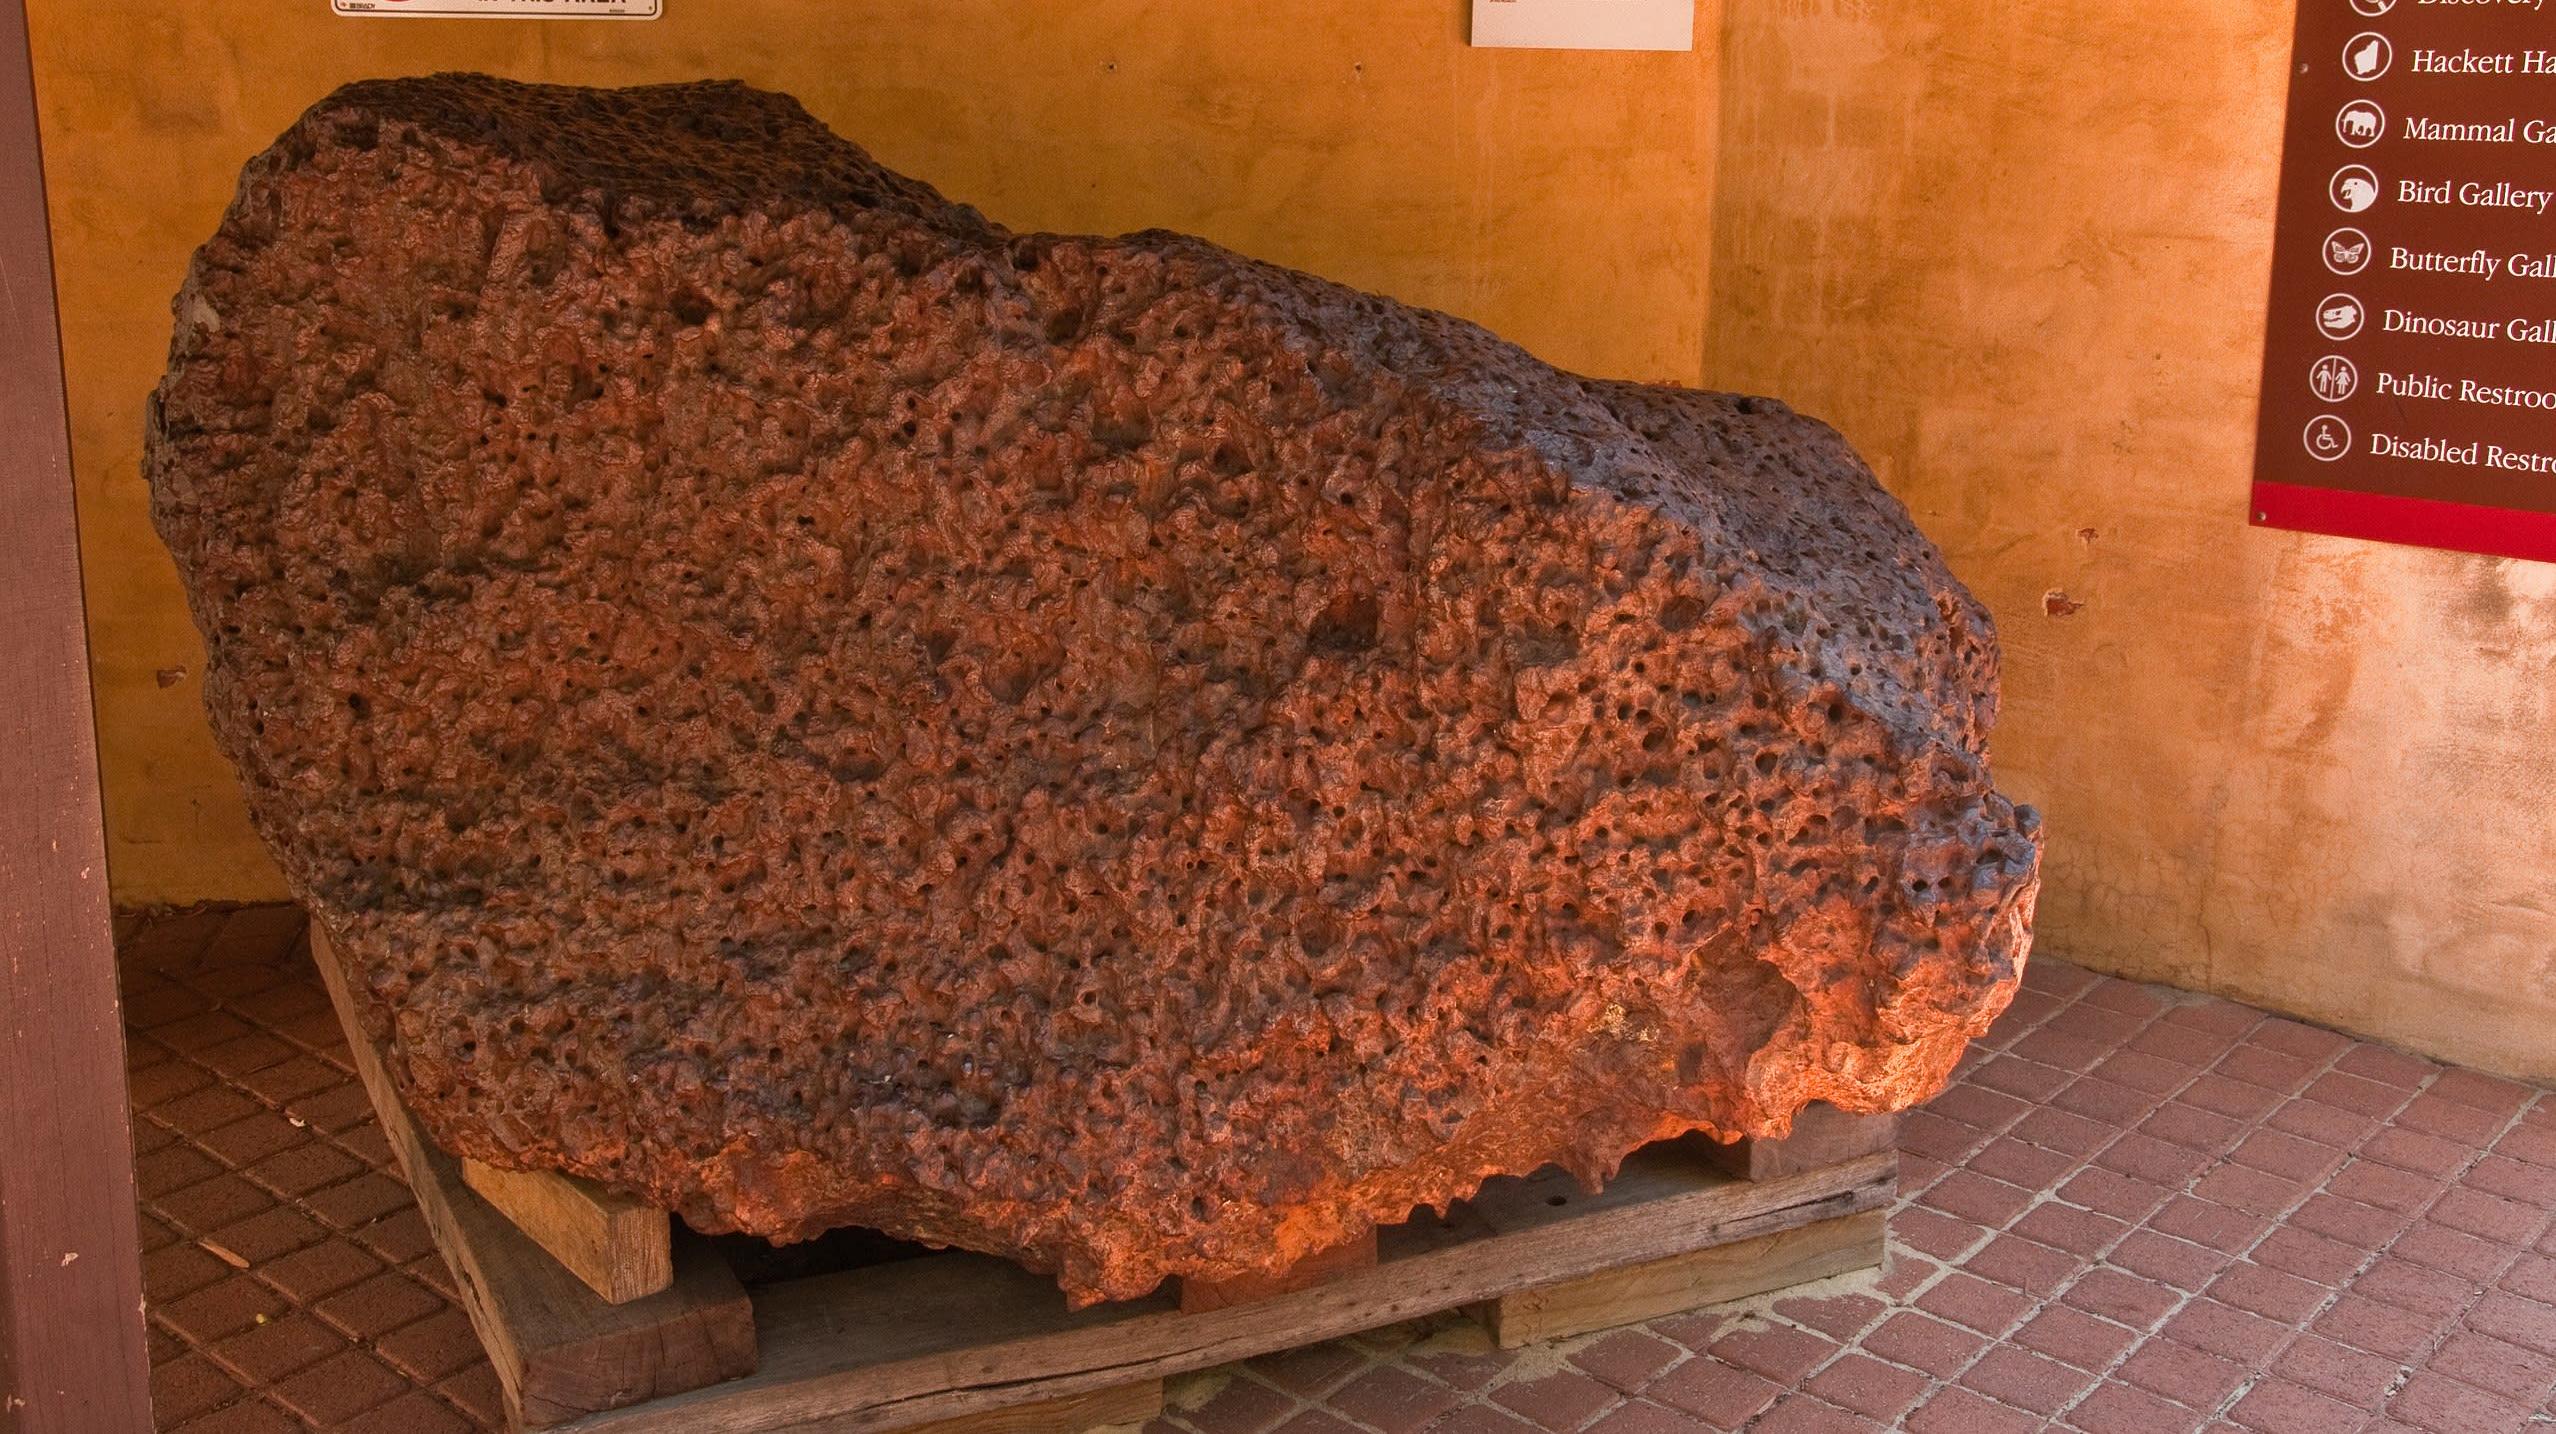 Massa do meteorito Mundrabilla. Os cientistas encontraram grãos de material supercondutor em um pequeno fragmento de Mundrabilla. Crédito: Graeme Churchard/Wikimedia Commons